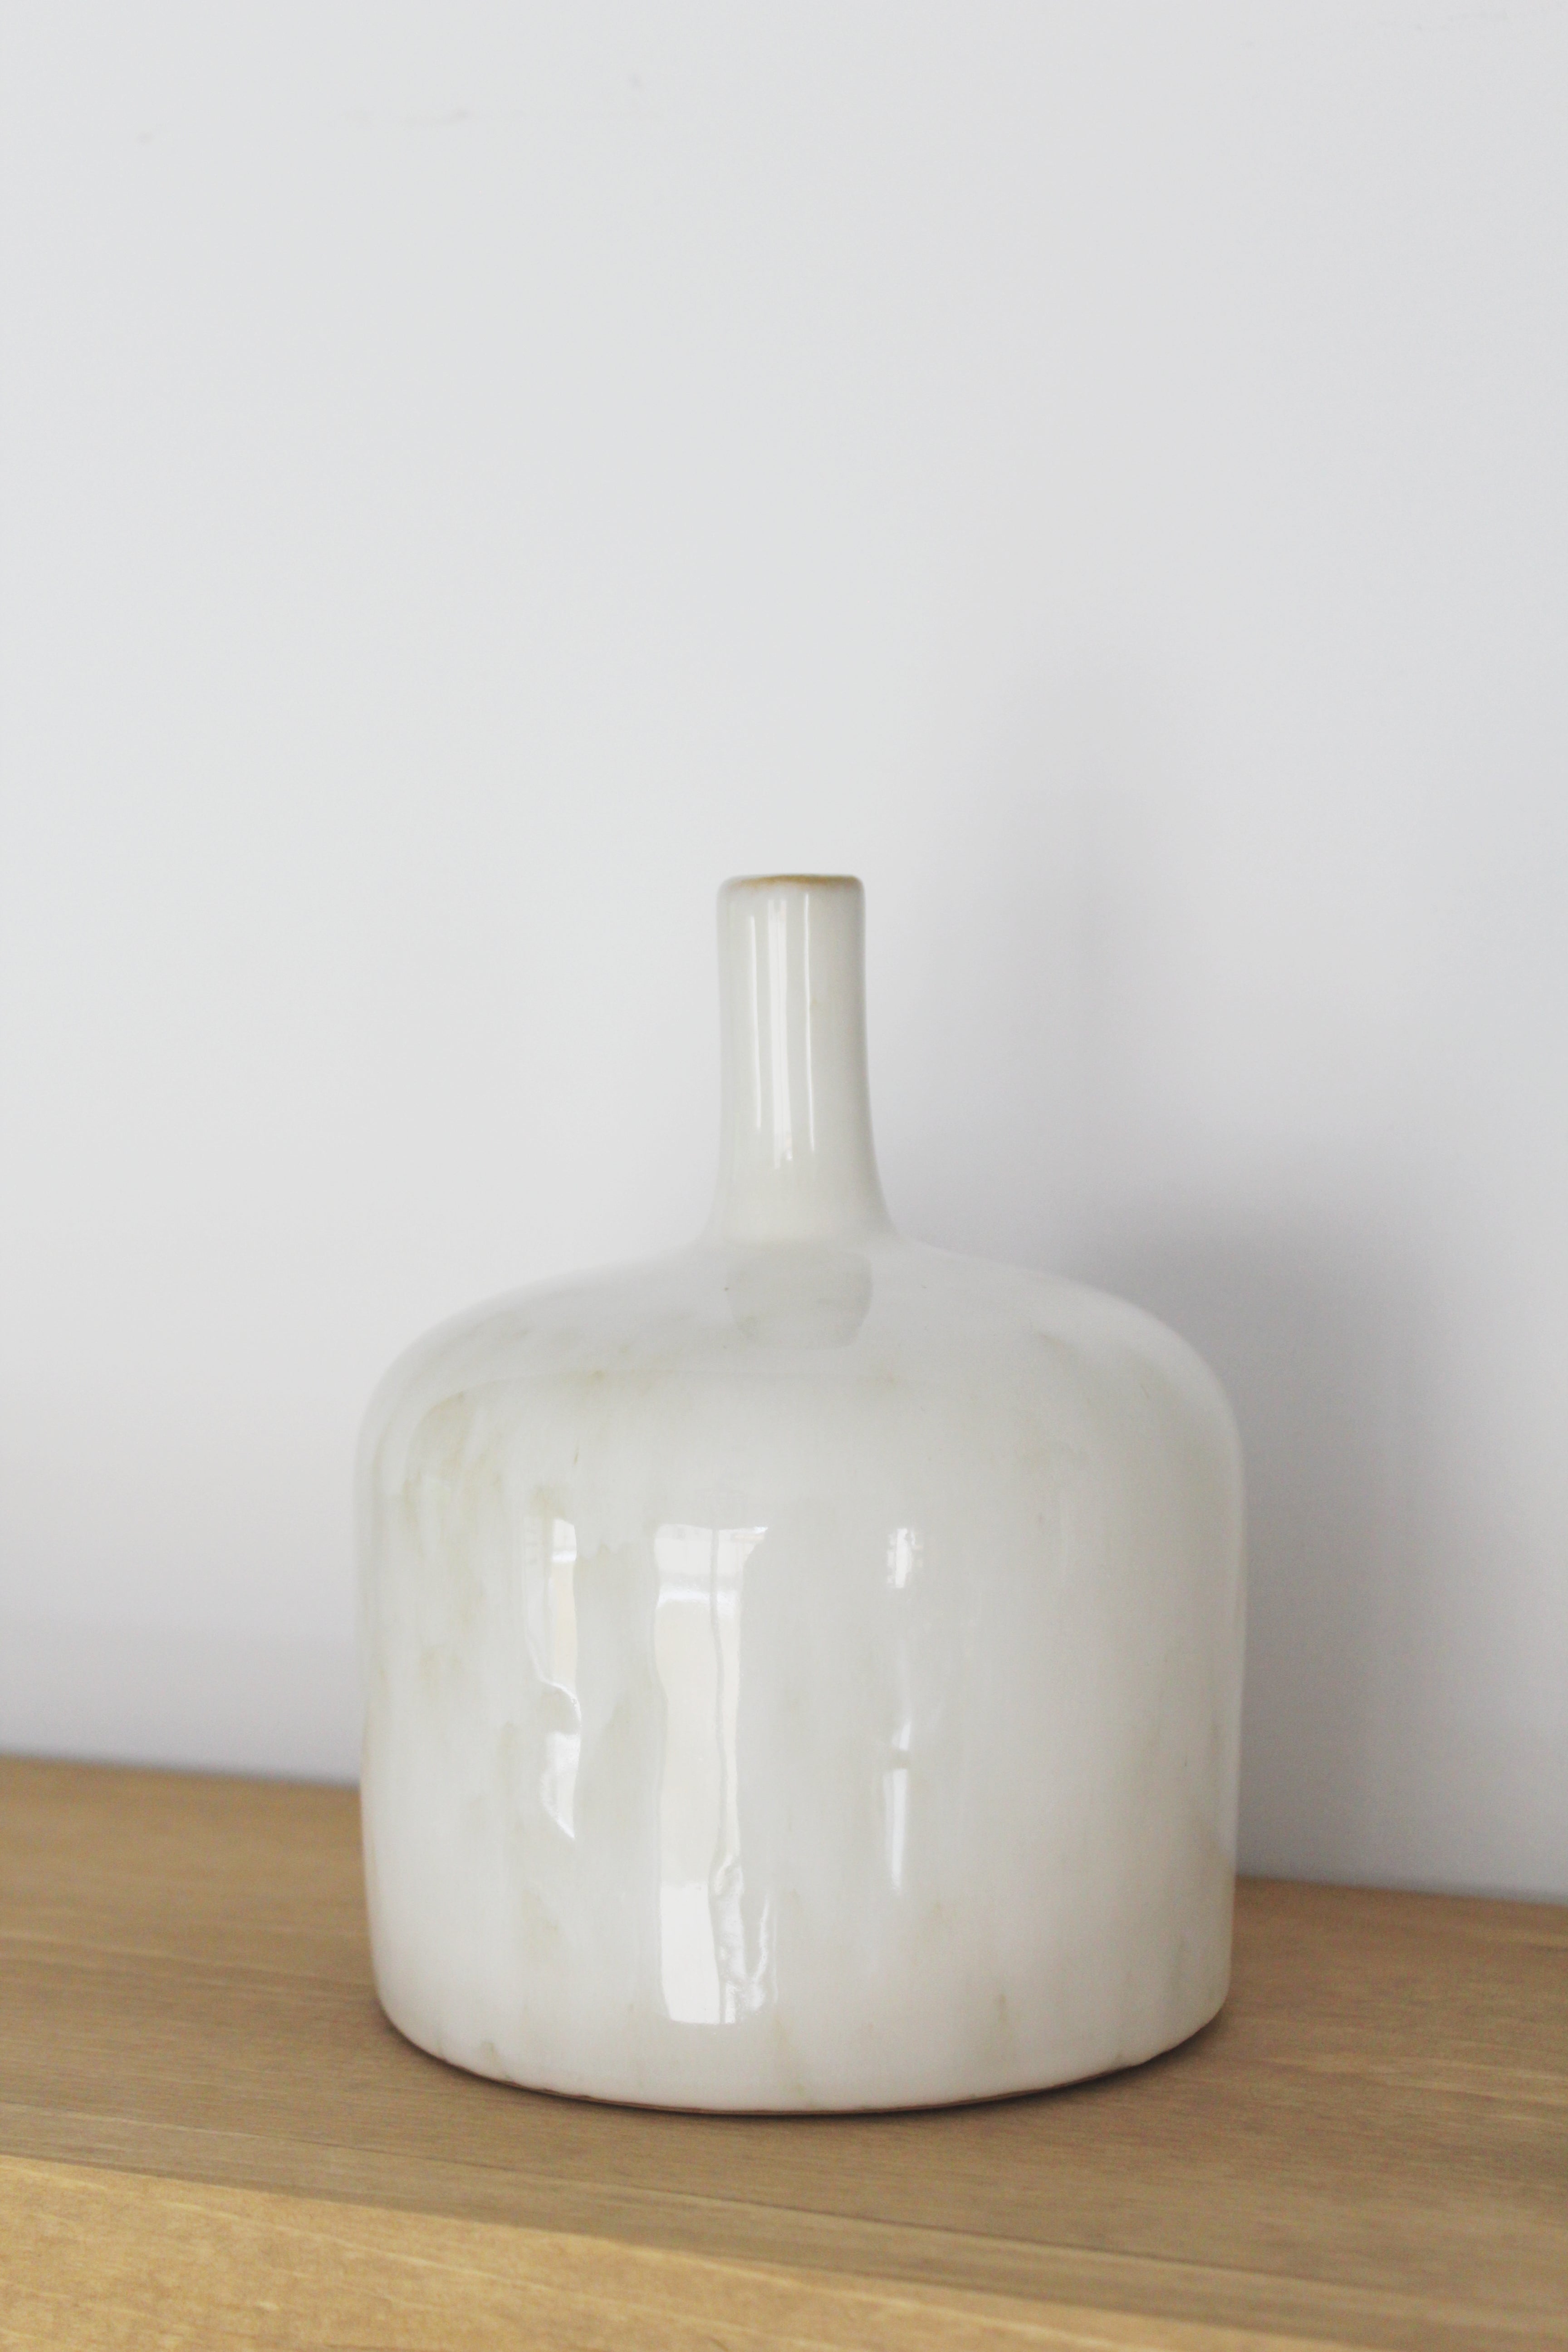 Small white glaze vase